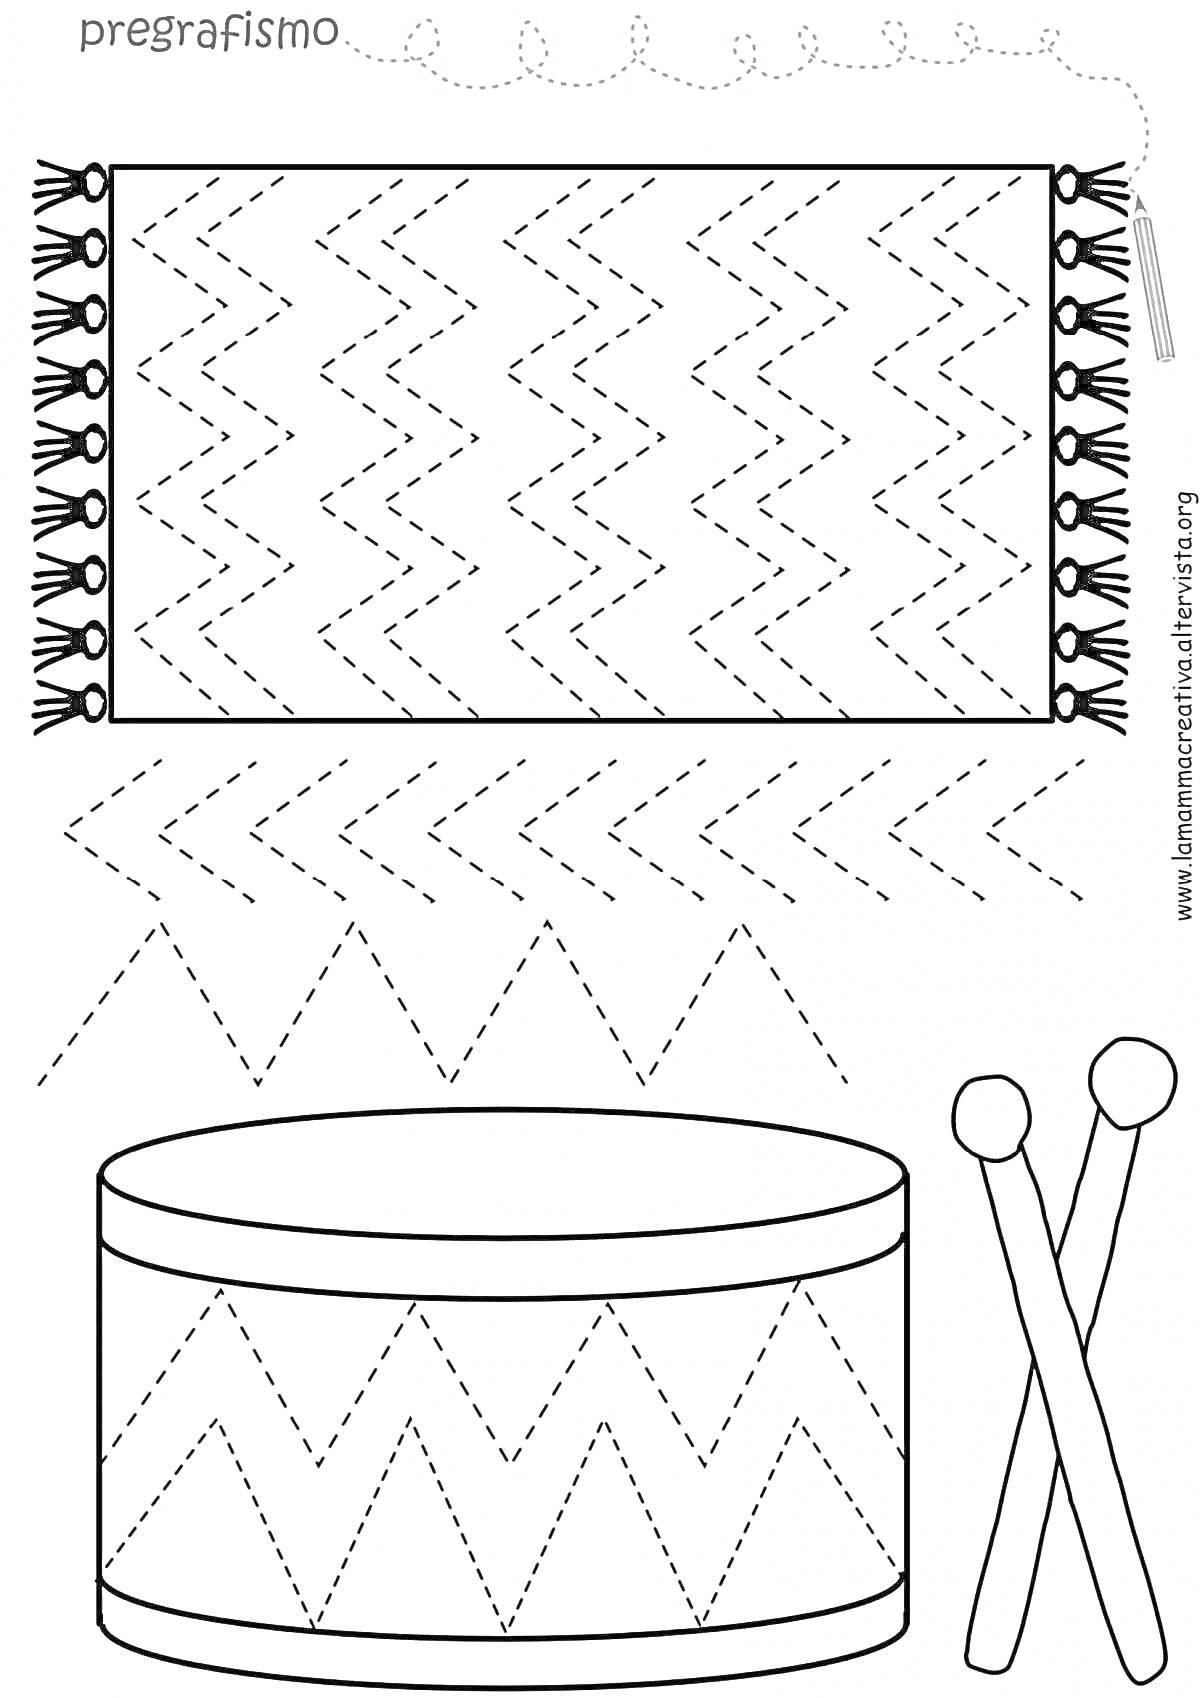 Полотенце с зигзагообразным узором и барабан с палочками